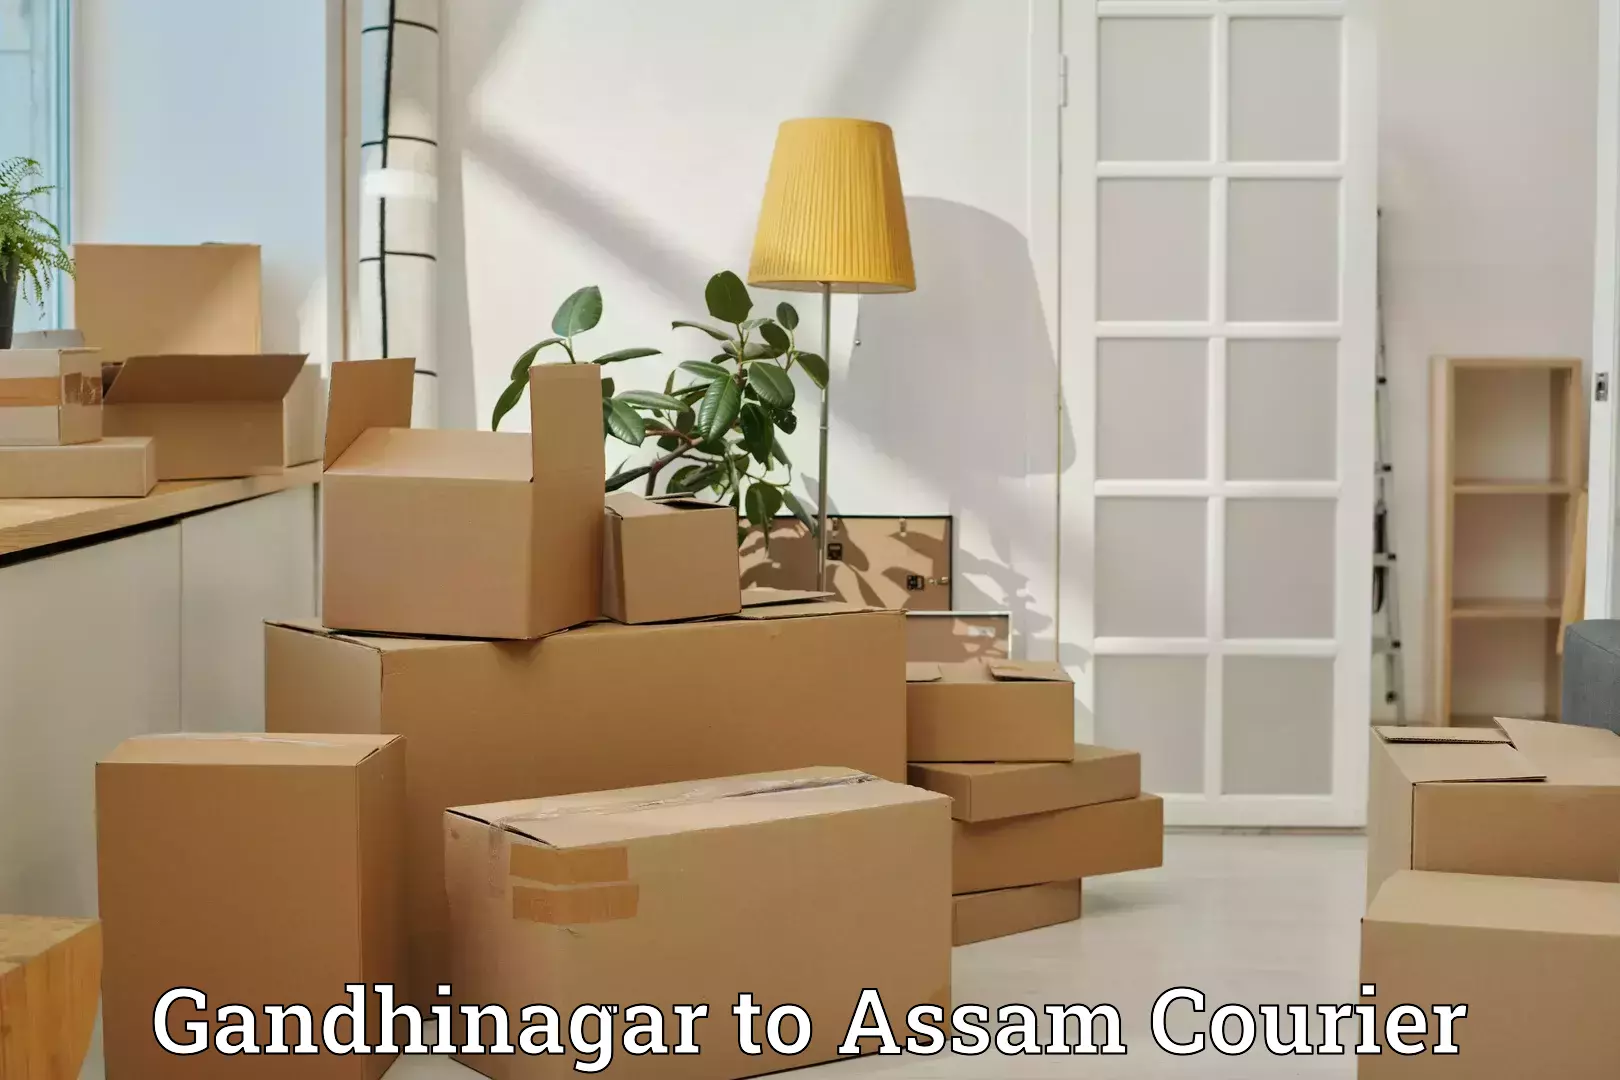 Baggage delivery management Gandhinagar to Assam